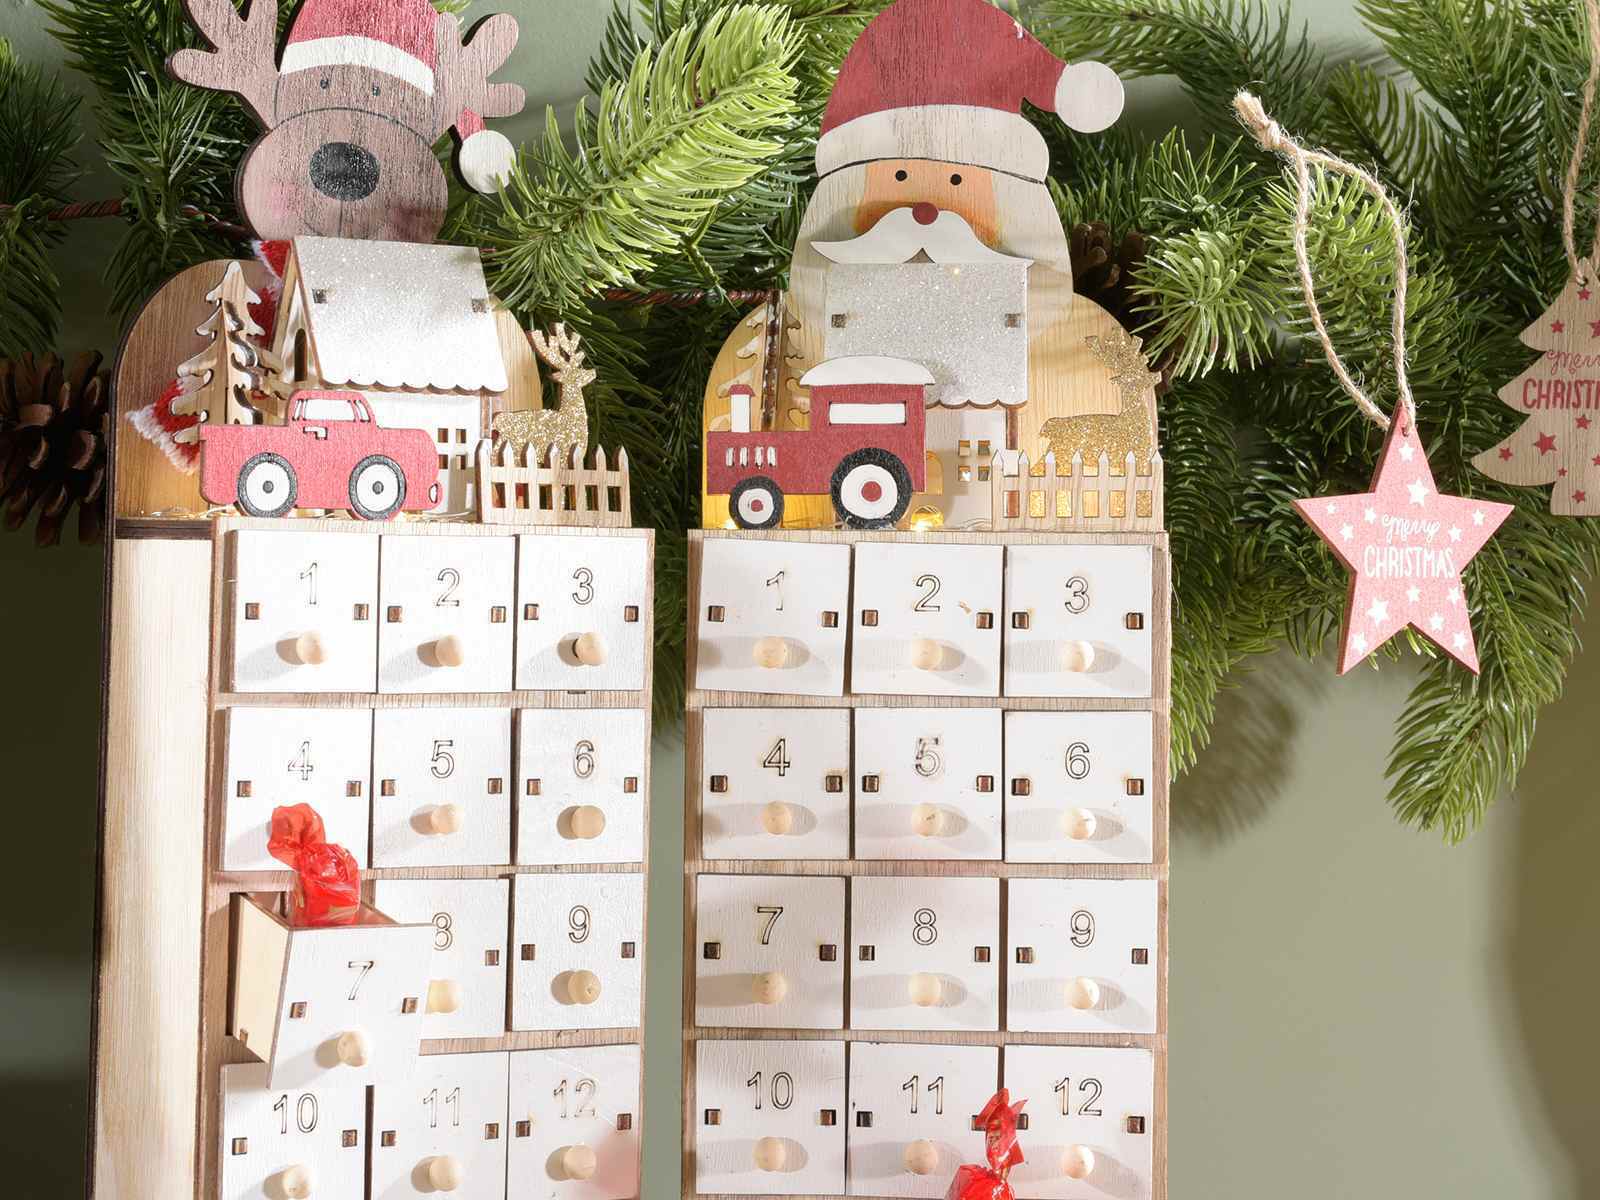 bomboniera-bomboniere-edencreazioni-terni-stroncone-decorazione-decoro-natale-natalizio-natalizia-statuina-legno-calendario-avvento-rosso-numeri-cassetti-cassetto-paesaggio-neve-innevato-led-renna-babbonatale-regalo-gift